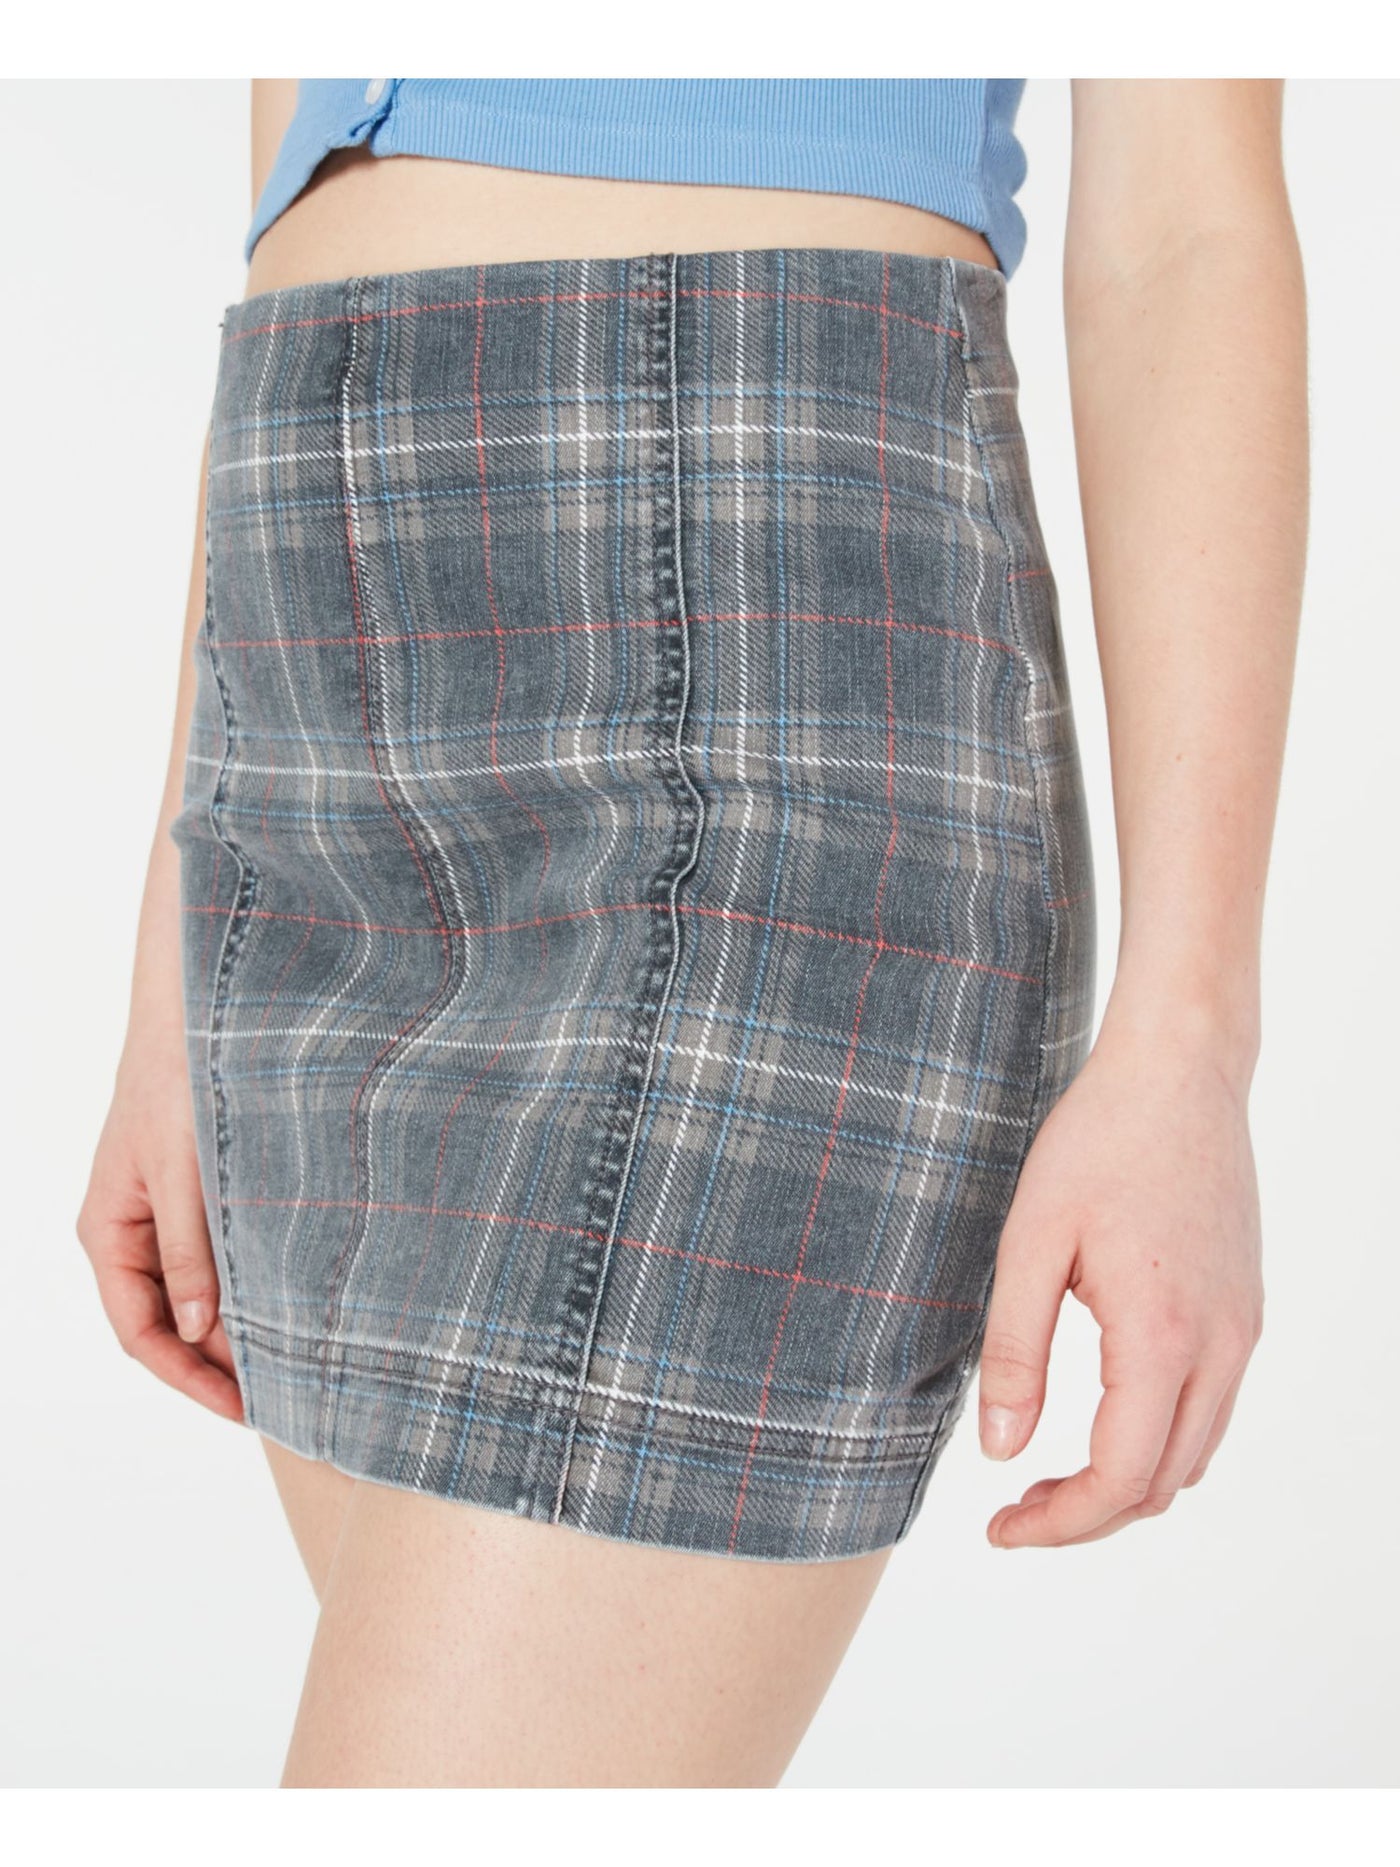 TINSELTOWN Womens Stretch Zippered Denim Short A-Line Skirt